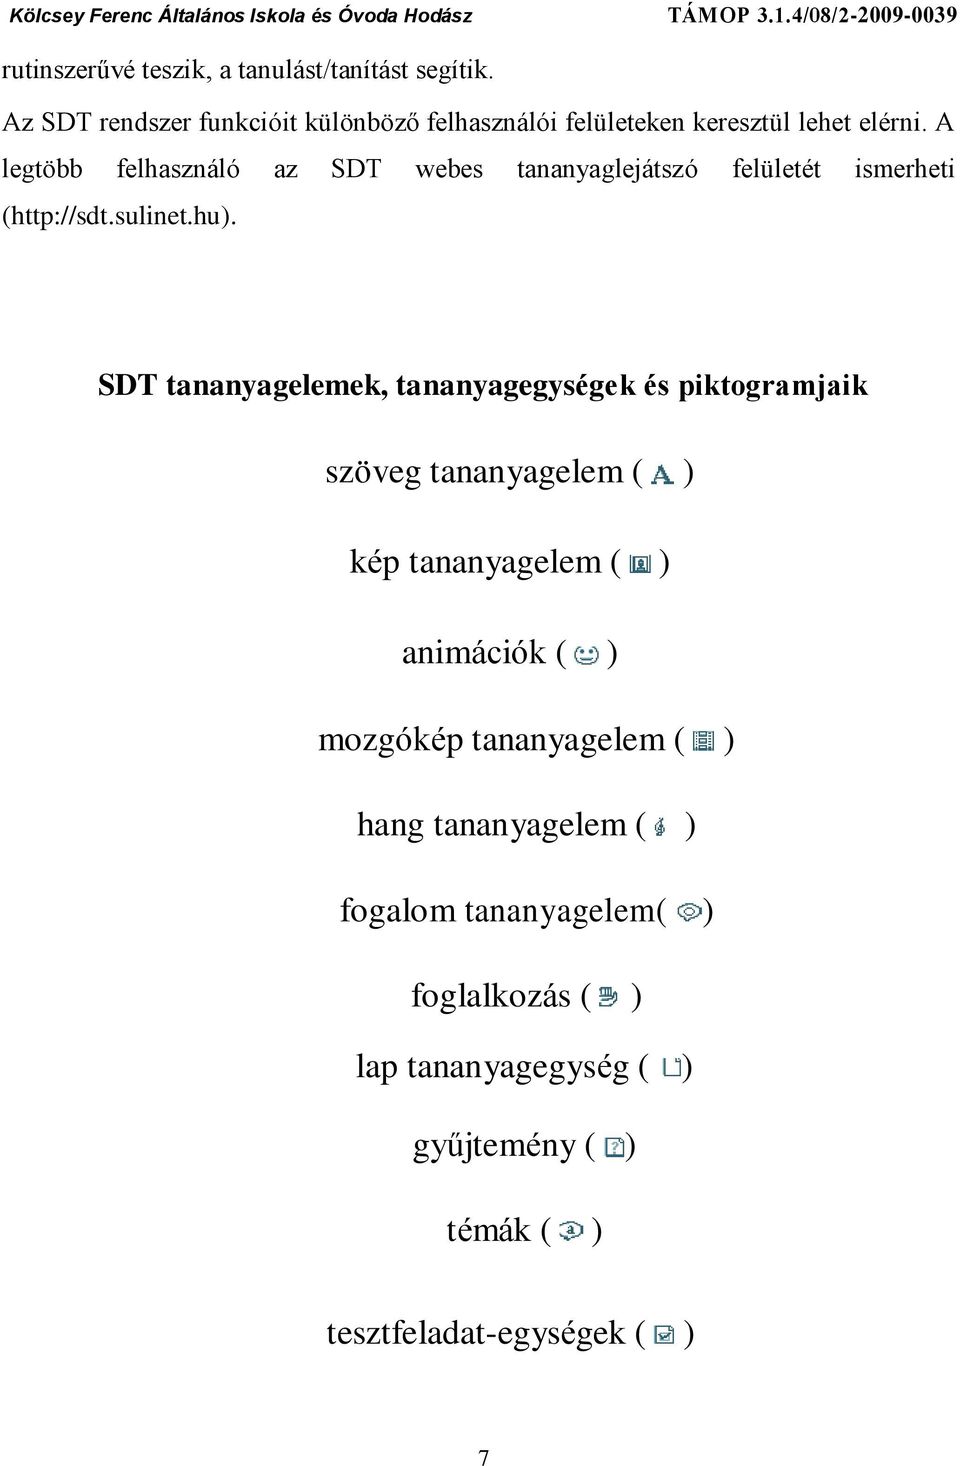 A legtöbb felhasználó az SDT webes tananyaglejátszó felületét ismerheti (http://sdt.sulinet.hu).